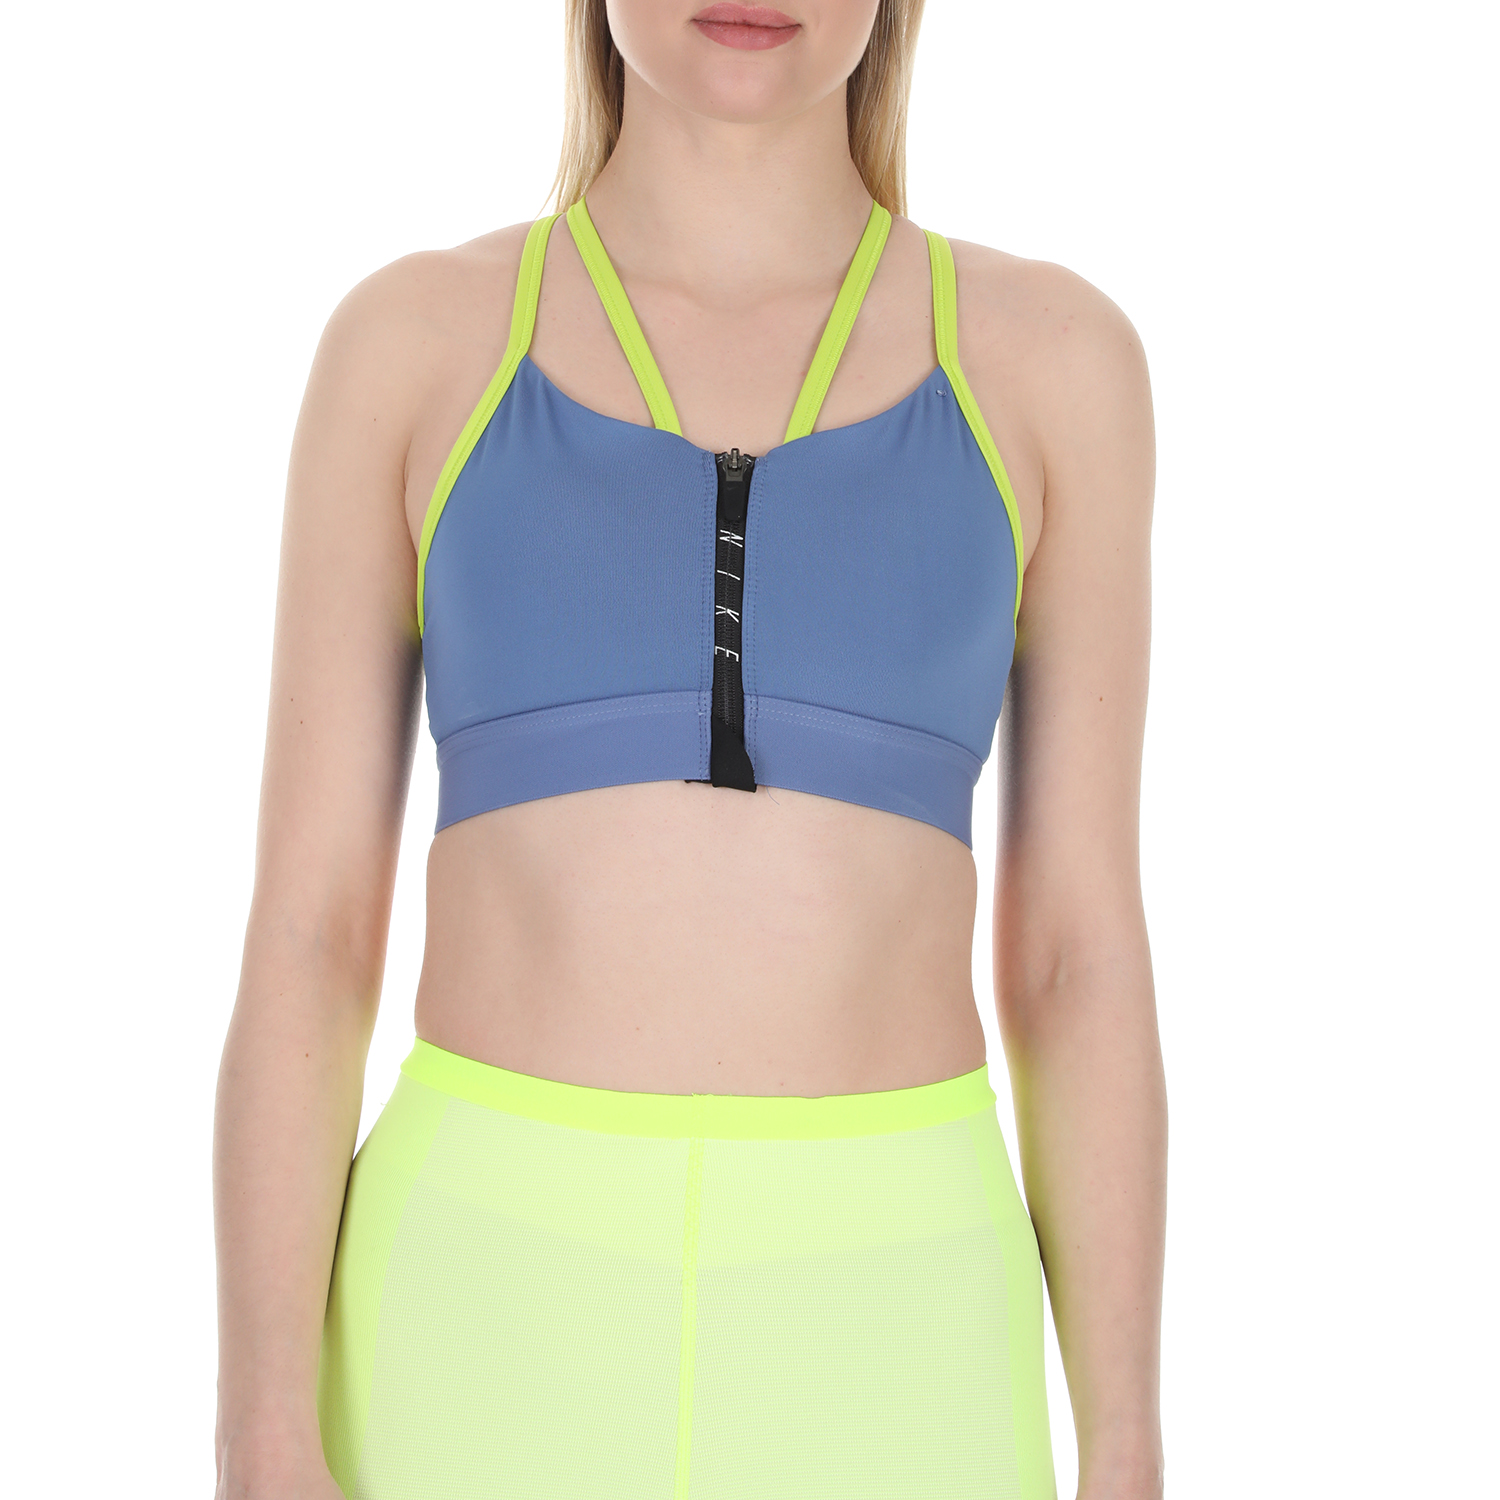 Γυναικεία/Ρούχα/Αθλητικά/Μπουστάκια NIKE - Γυναικείο αθλητικό μπουστάκι Nike Zip Indy Women's Light Su μπλε κίτρινο